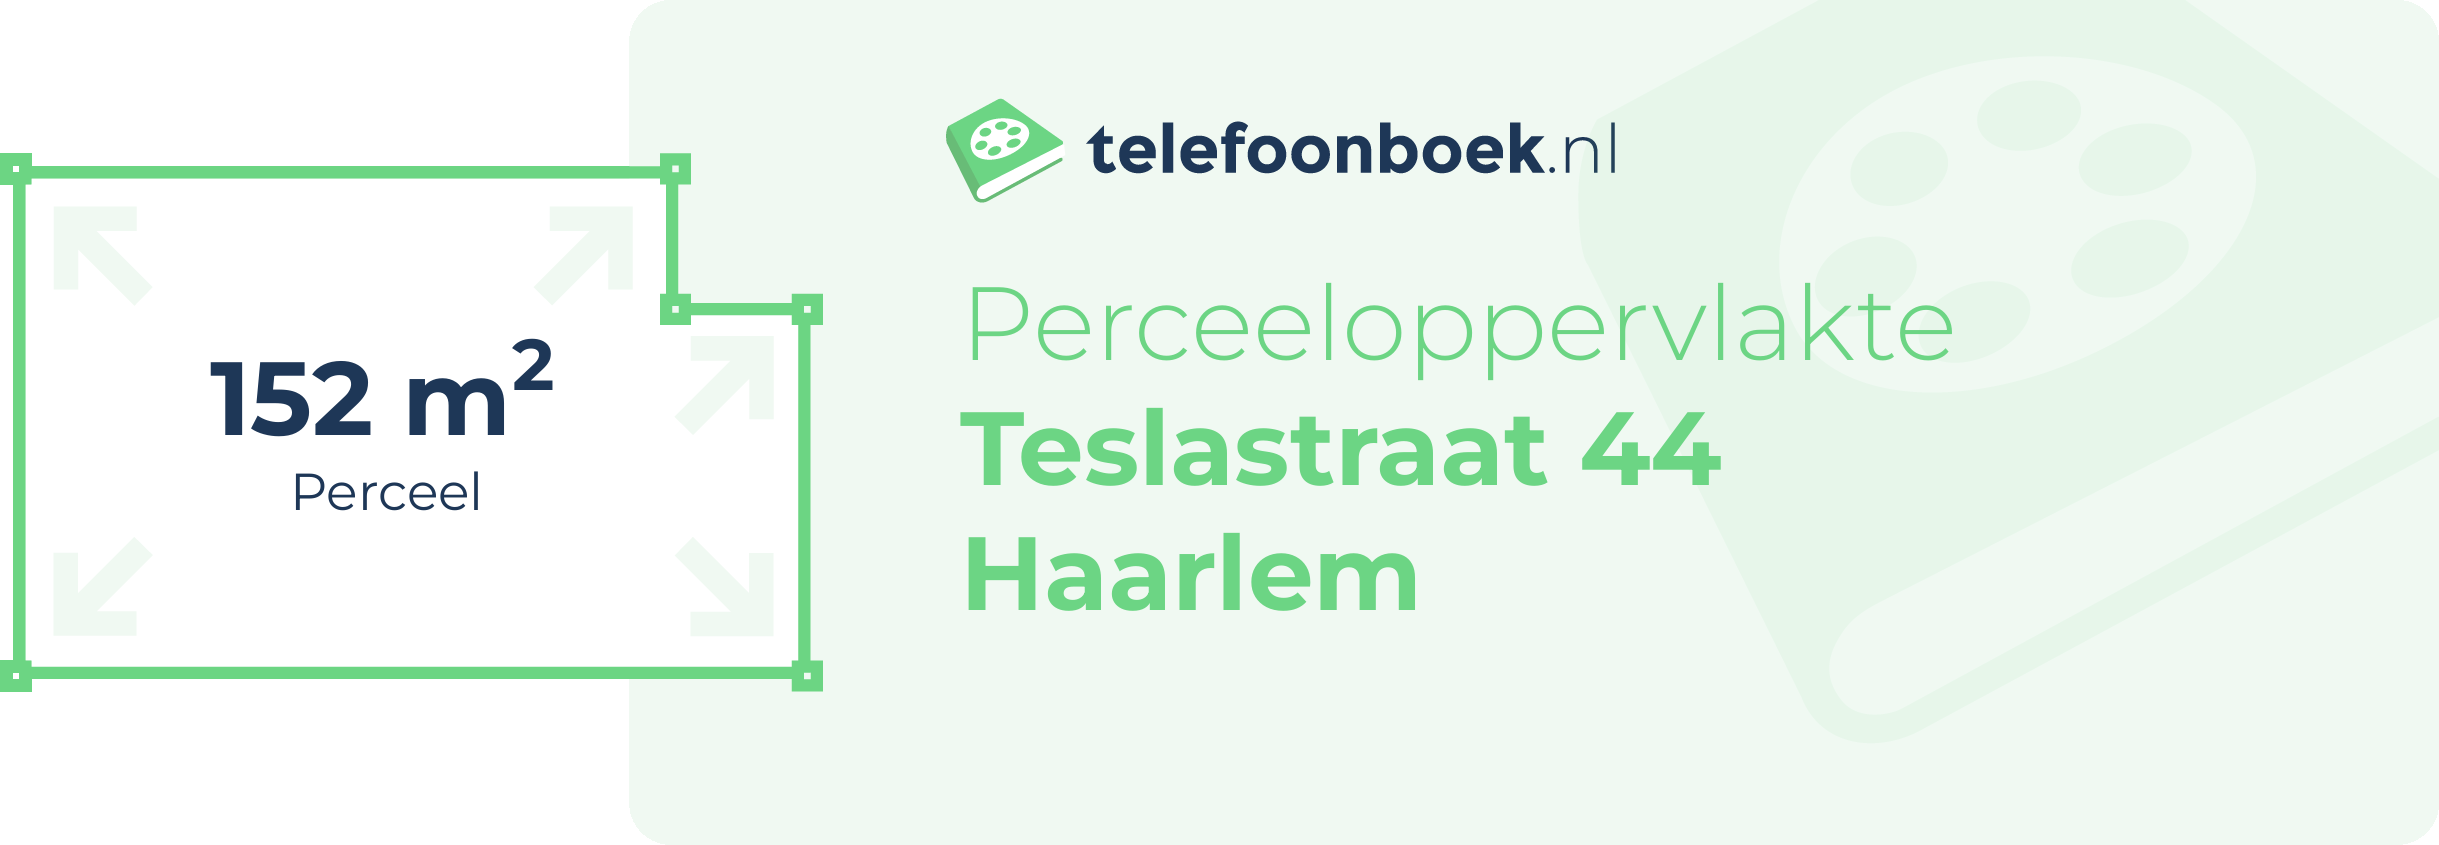 Perceeloppervlakte Teslastraat 44 Haarlem